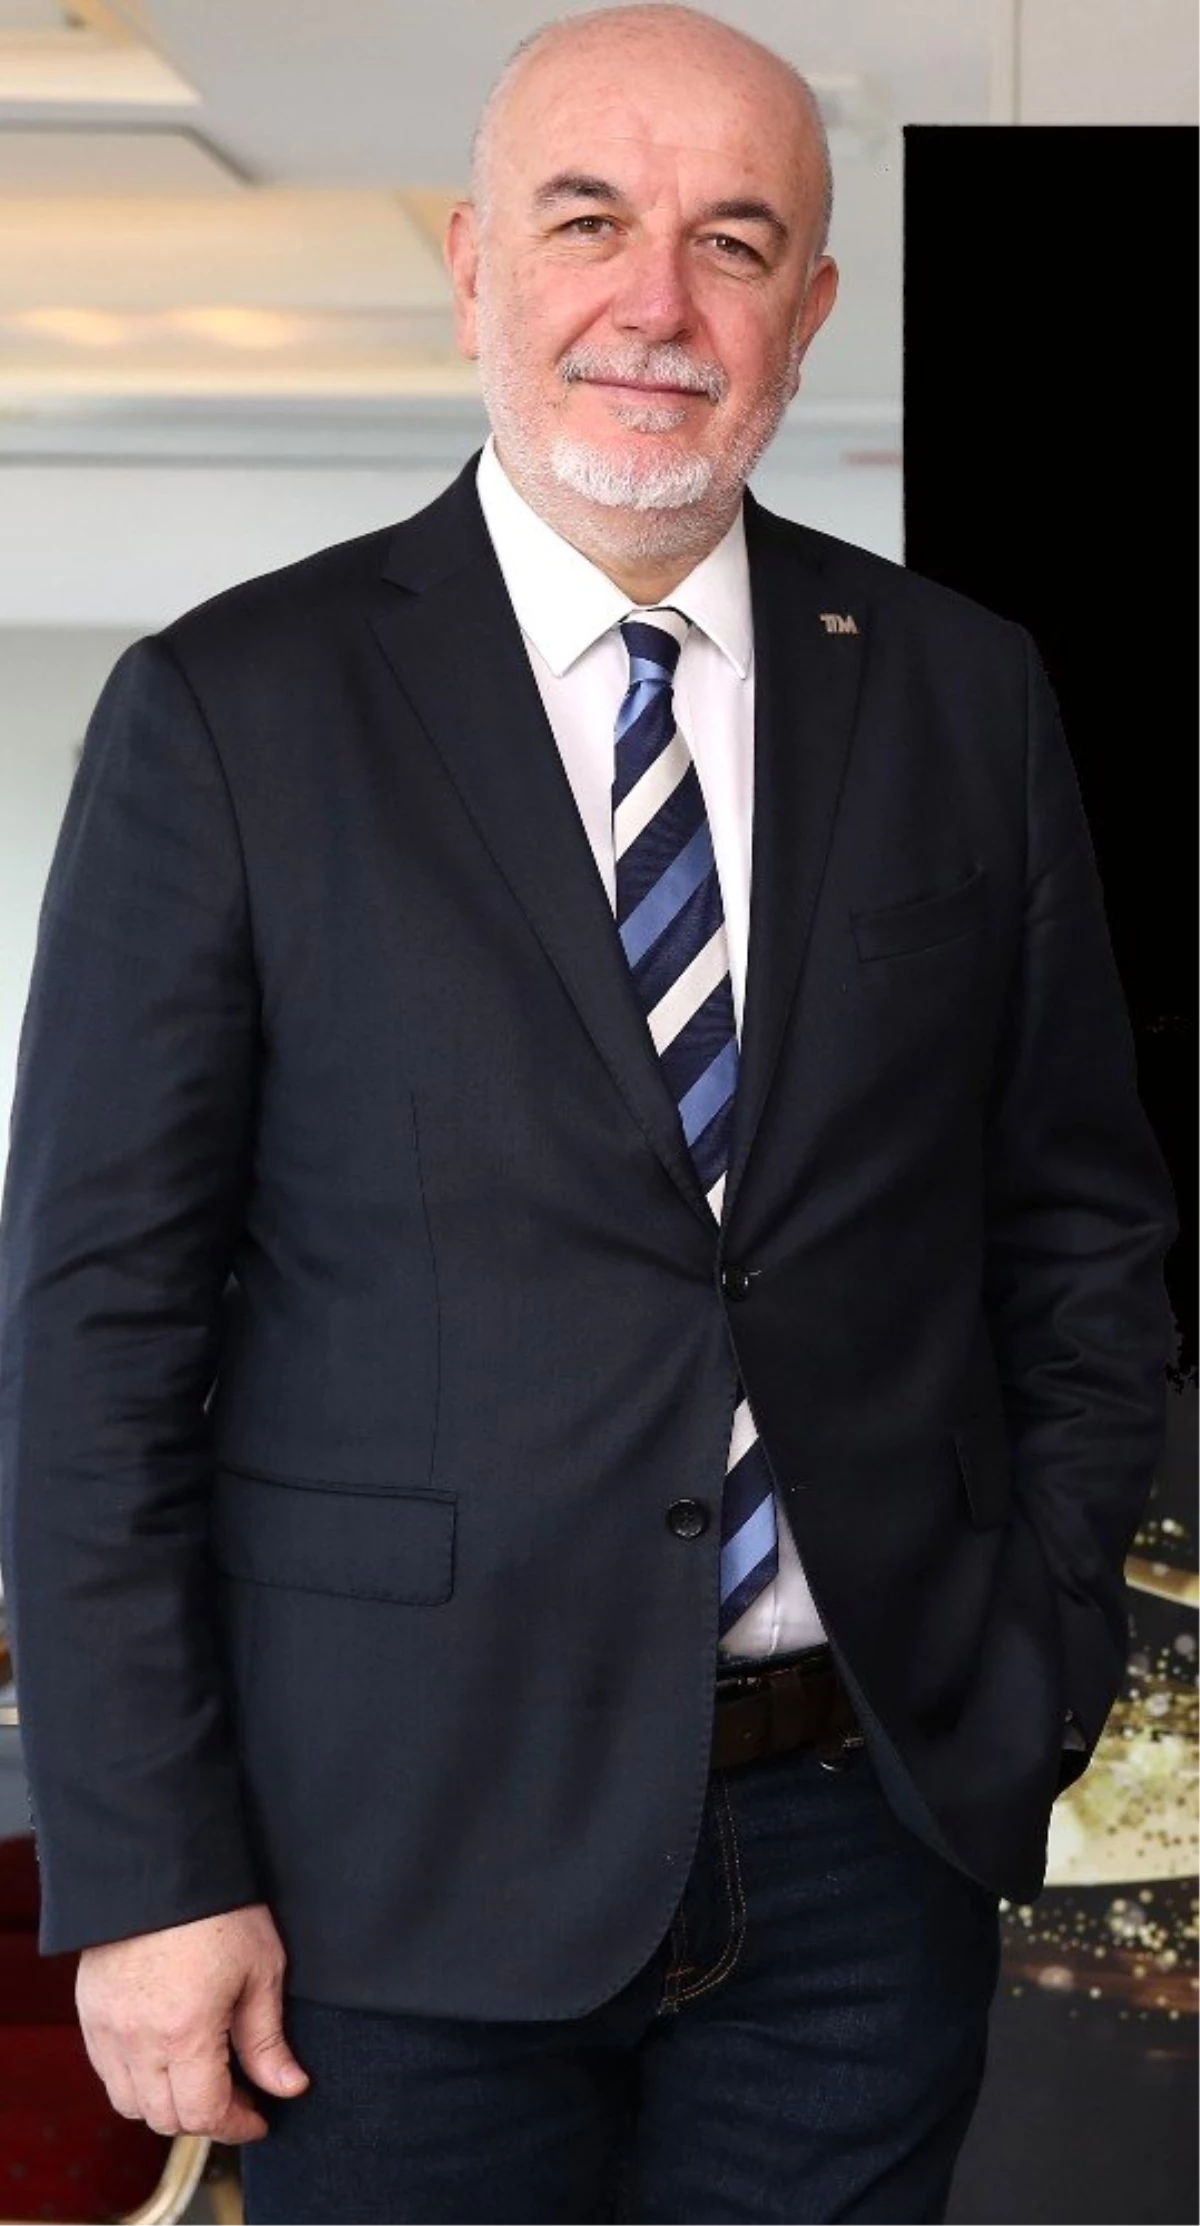 Mücevher İhracatçıları Birliği Başkanı Mustafa Kamar: "Kredi kartına 24 ay taksit, sektörü...